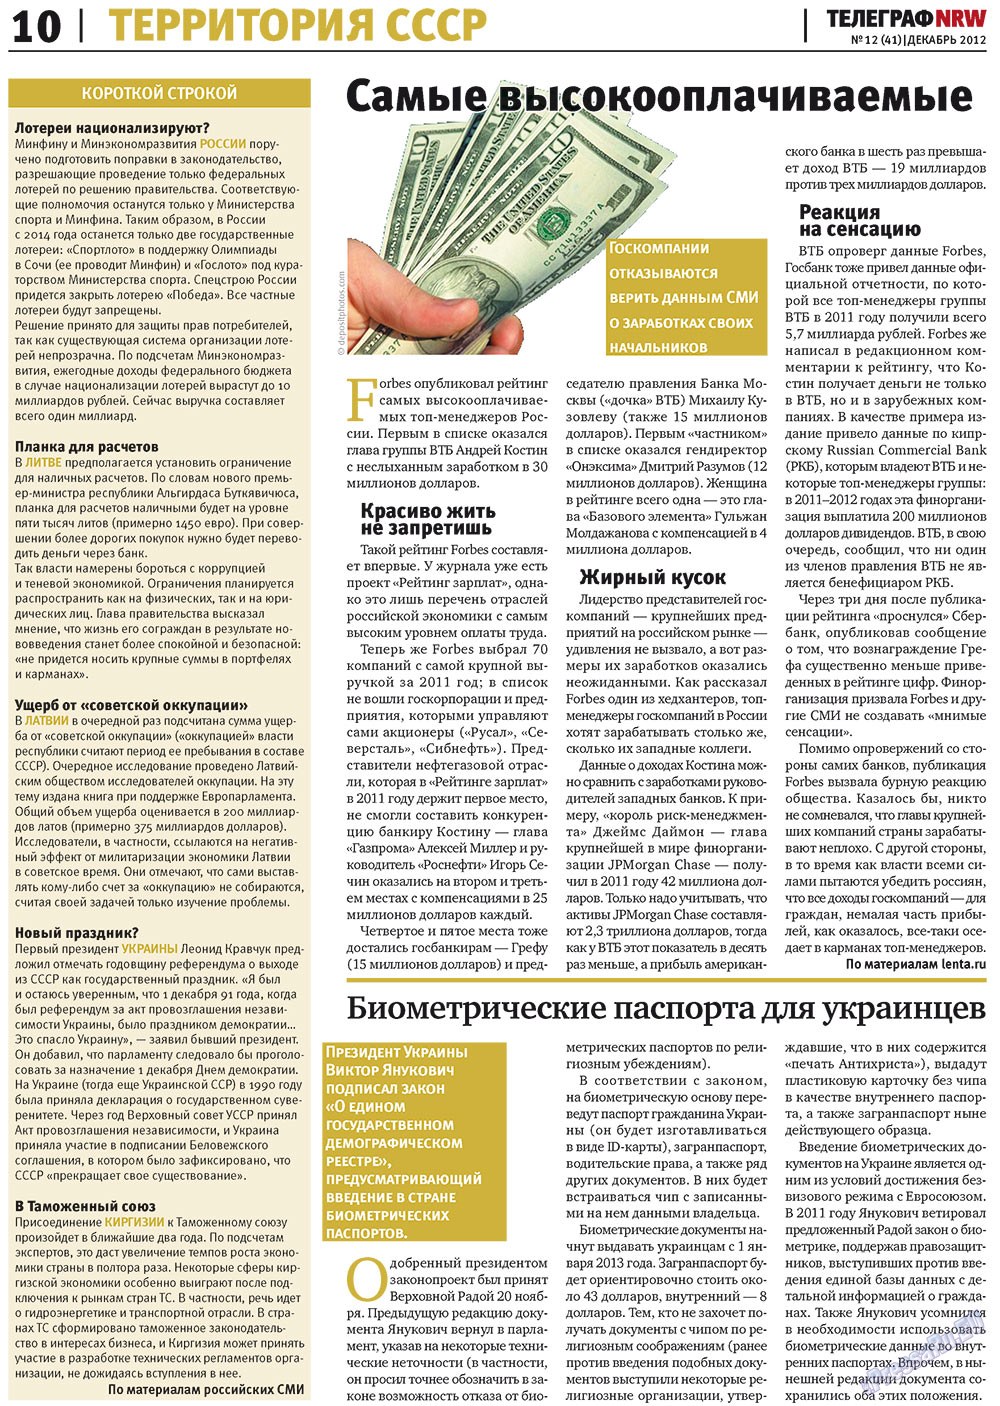 Телеграф NRW (газета). 2012 год, номер 12, стр. 10